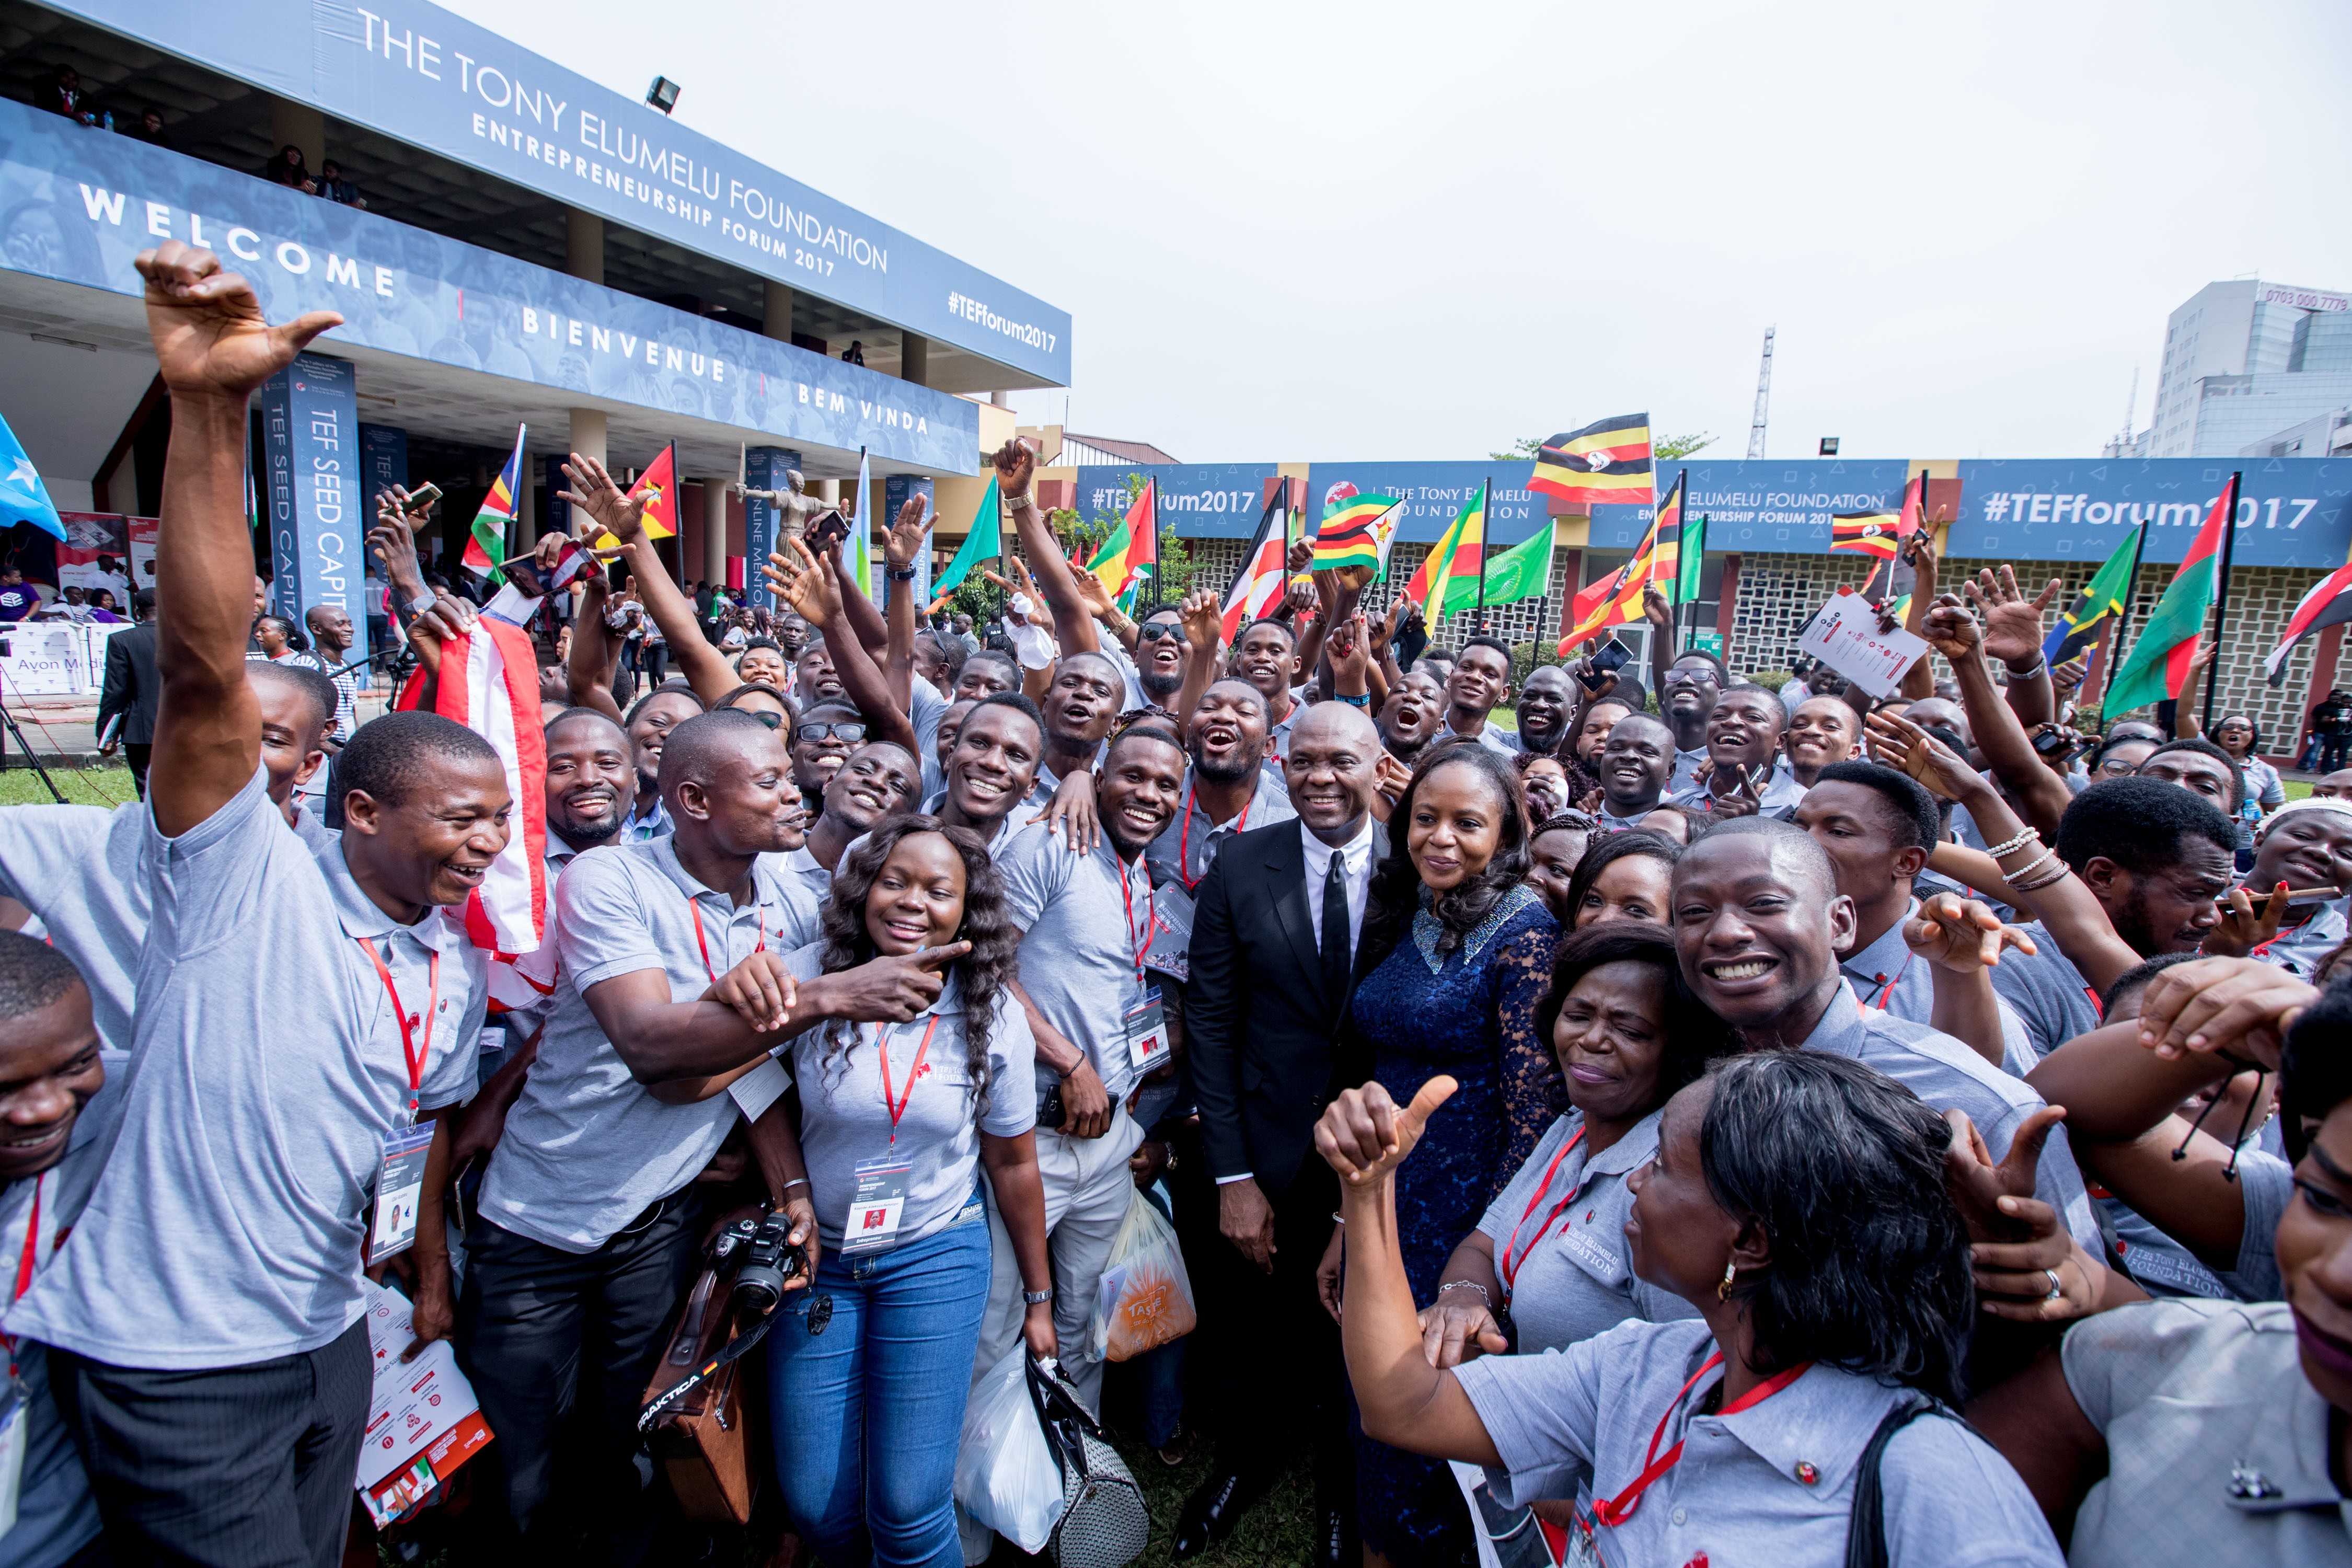 FORUM DE L'ENTREPRENEURIAT : La Fondation Tony Elumelu organise la plus grande rencontre des entrepreneurs africains.